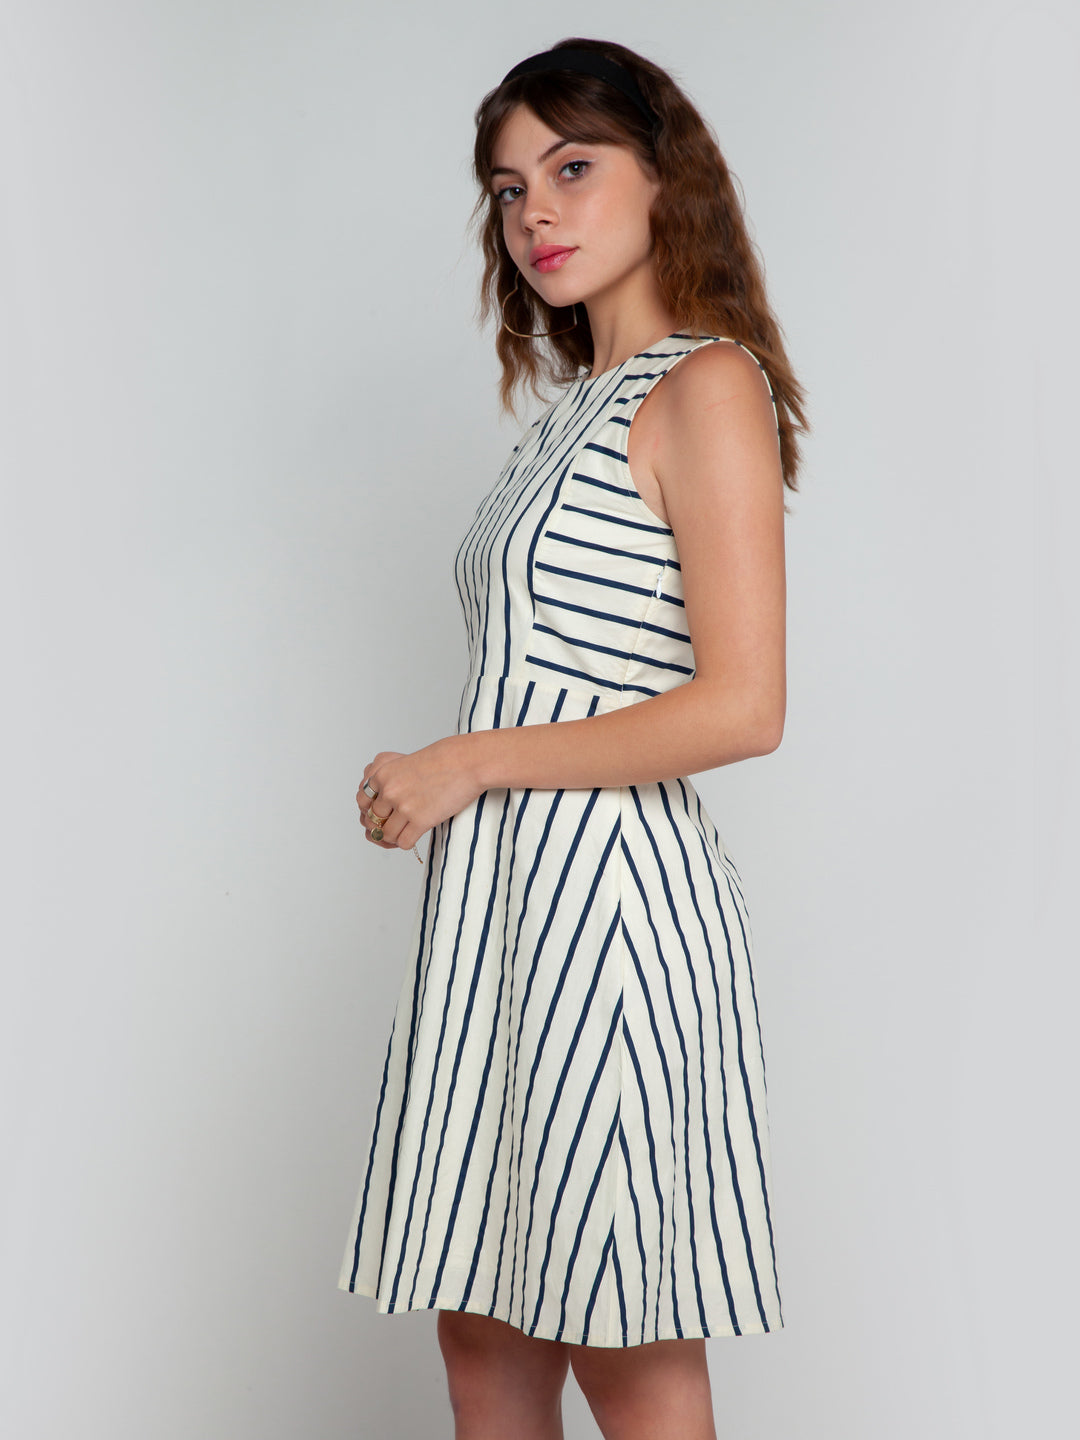 White Striped Short Dress For Women